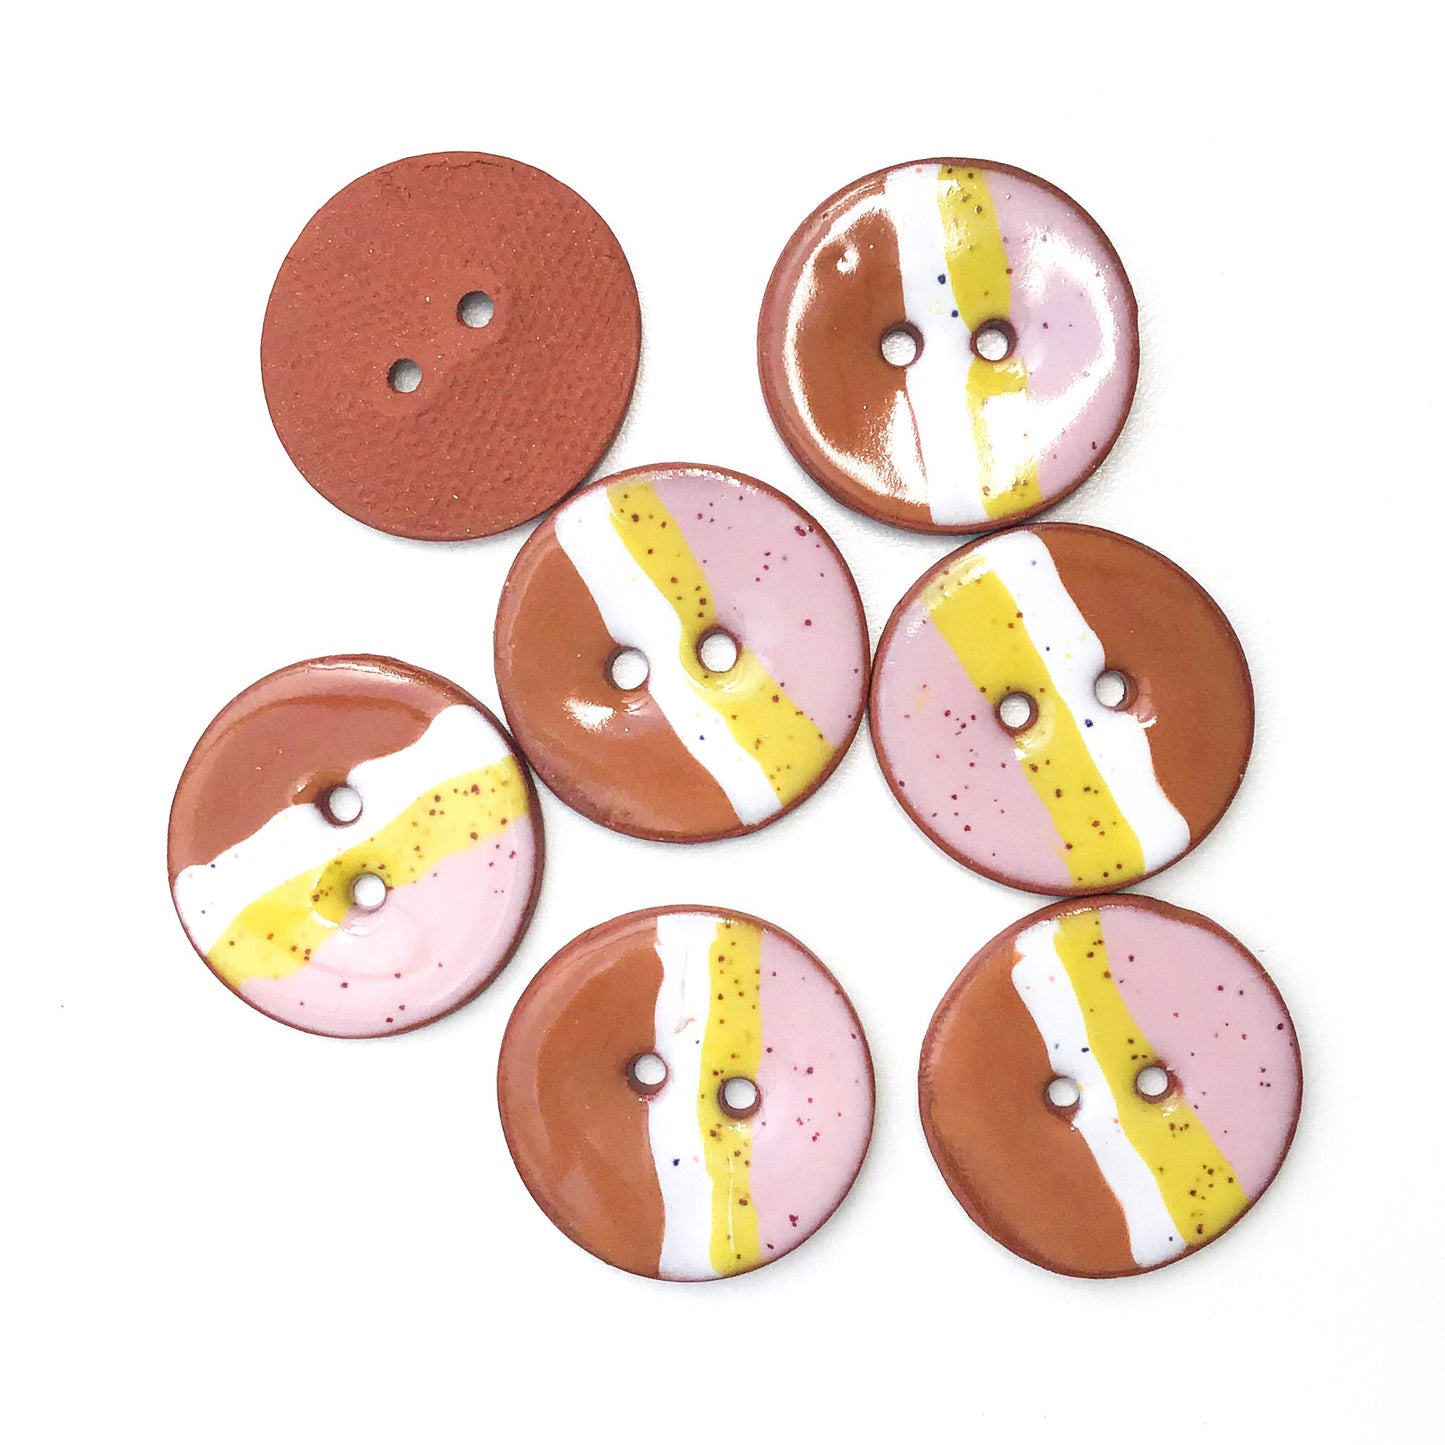 Muticolored Ceramic Button with Diagonal Striping - Decorative Clay Button - 1 1/16"